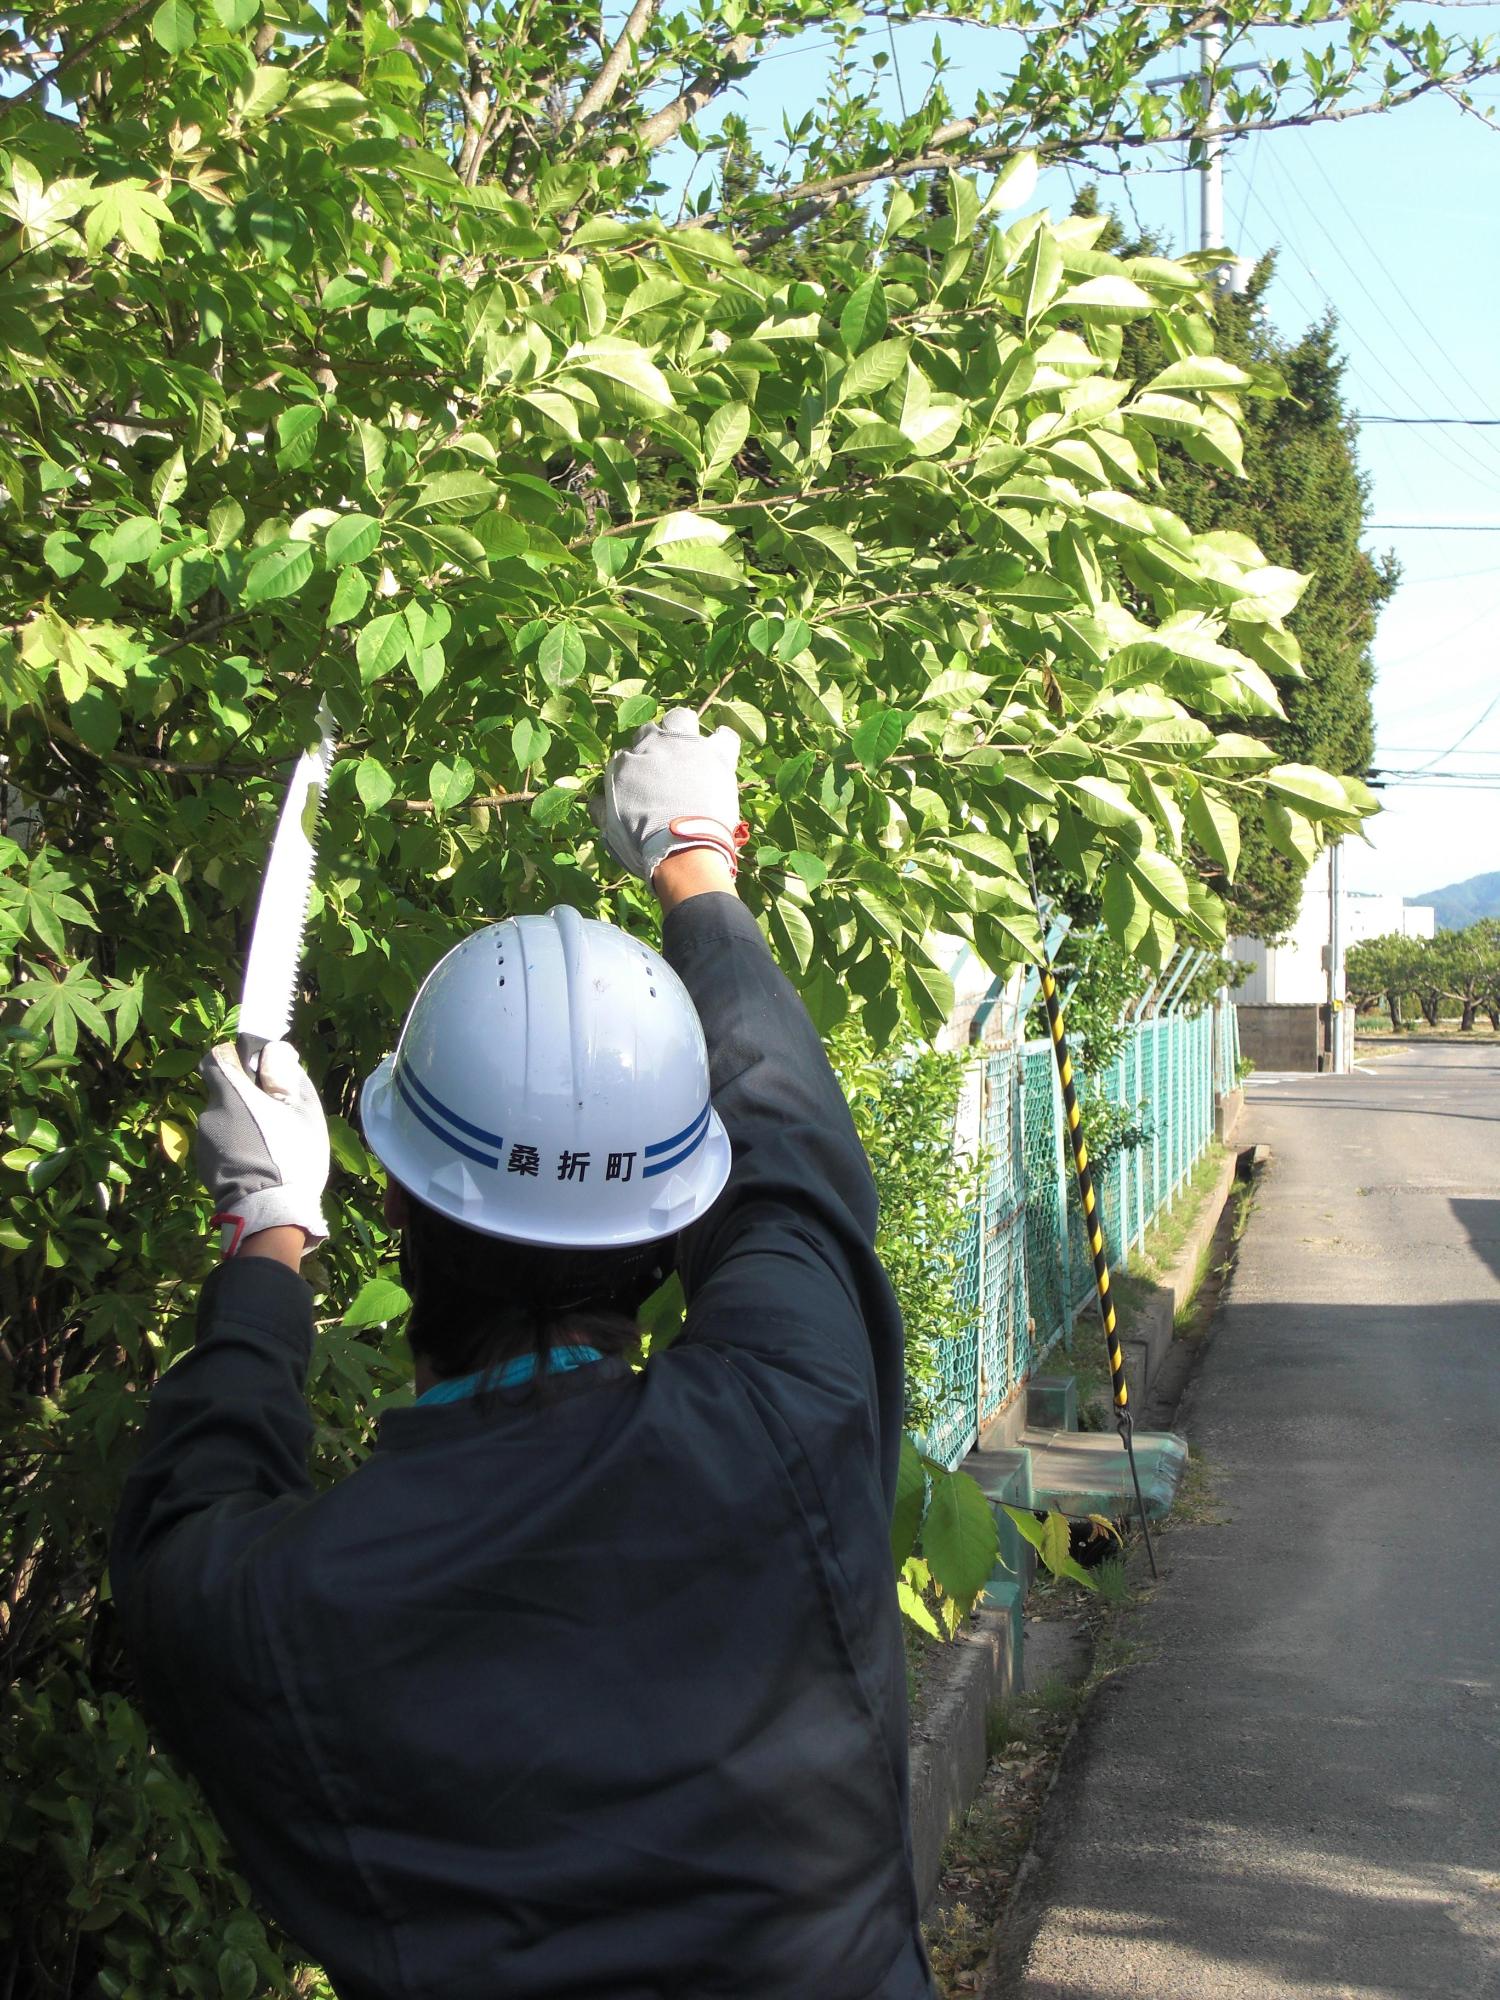 フェンスからはみ出した枝を剪定している桑折町の職員の写真